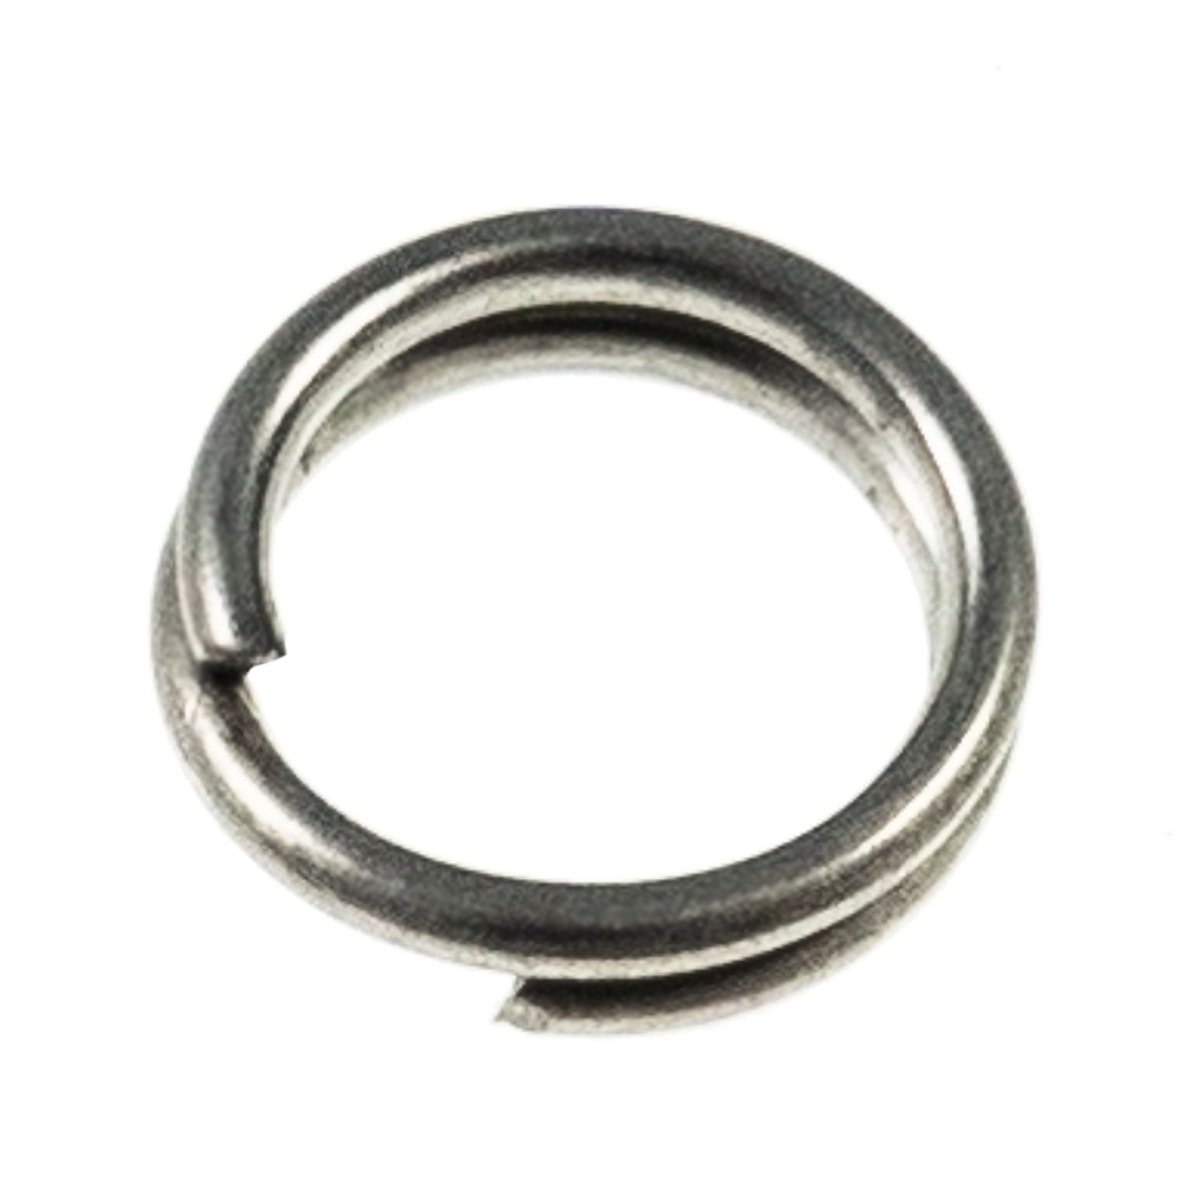 https://riteangler.com/cdn/shop/products/ra-split-ring.jpg?v=1646421707